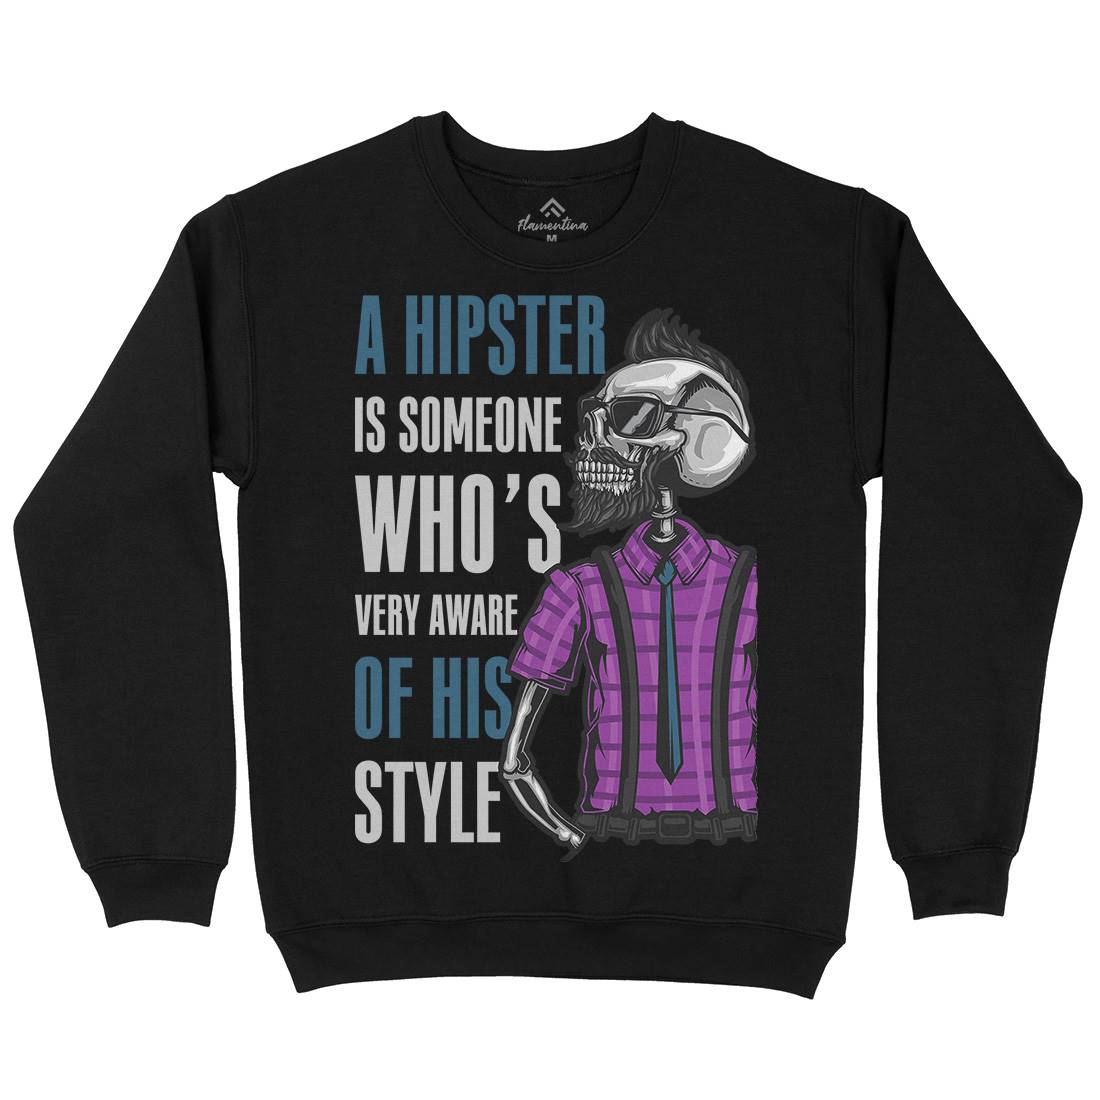 Hipster Kids Crew Neck Sweatshirt Barber B131